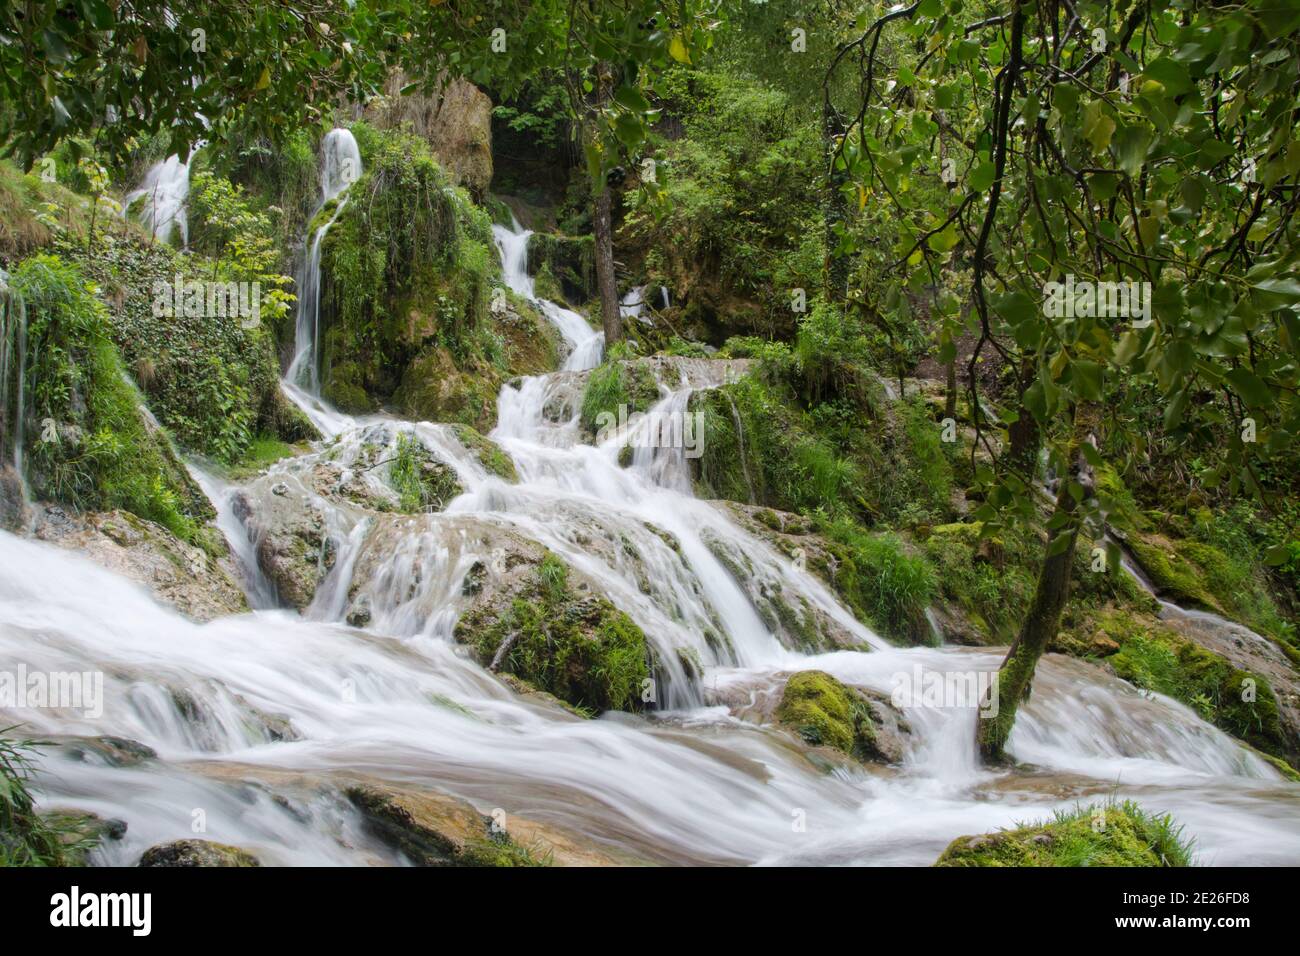 Der märchenhafte Wasserfall des Syratus, ein Zufluss der Loue im französischen Jura Foto Stock